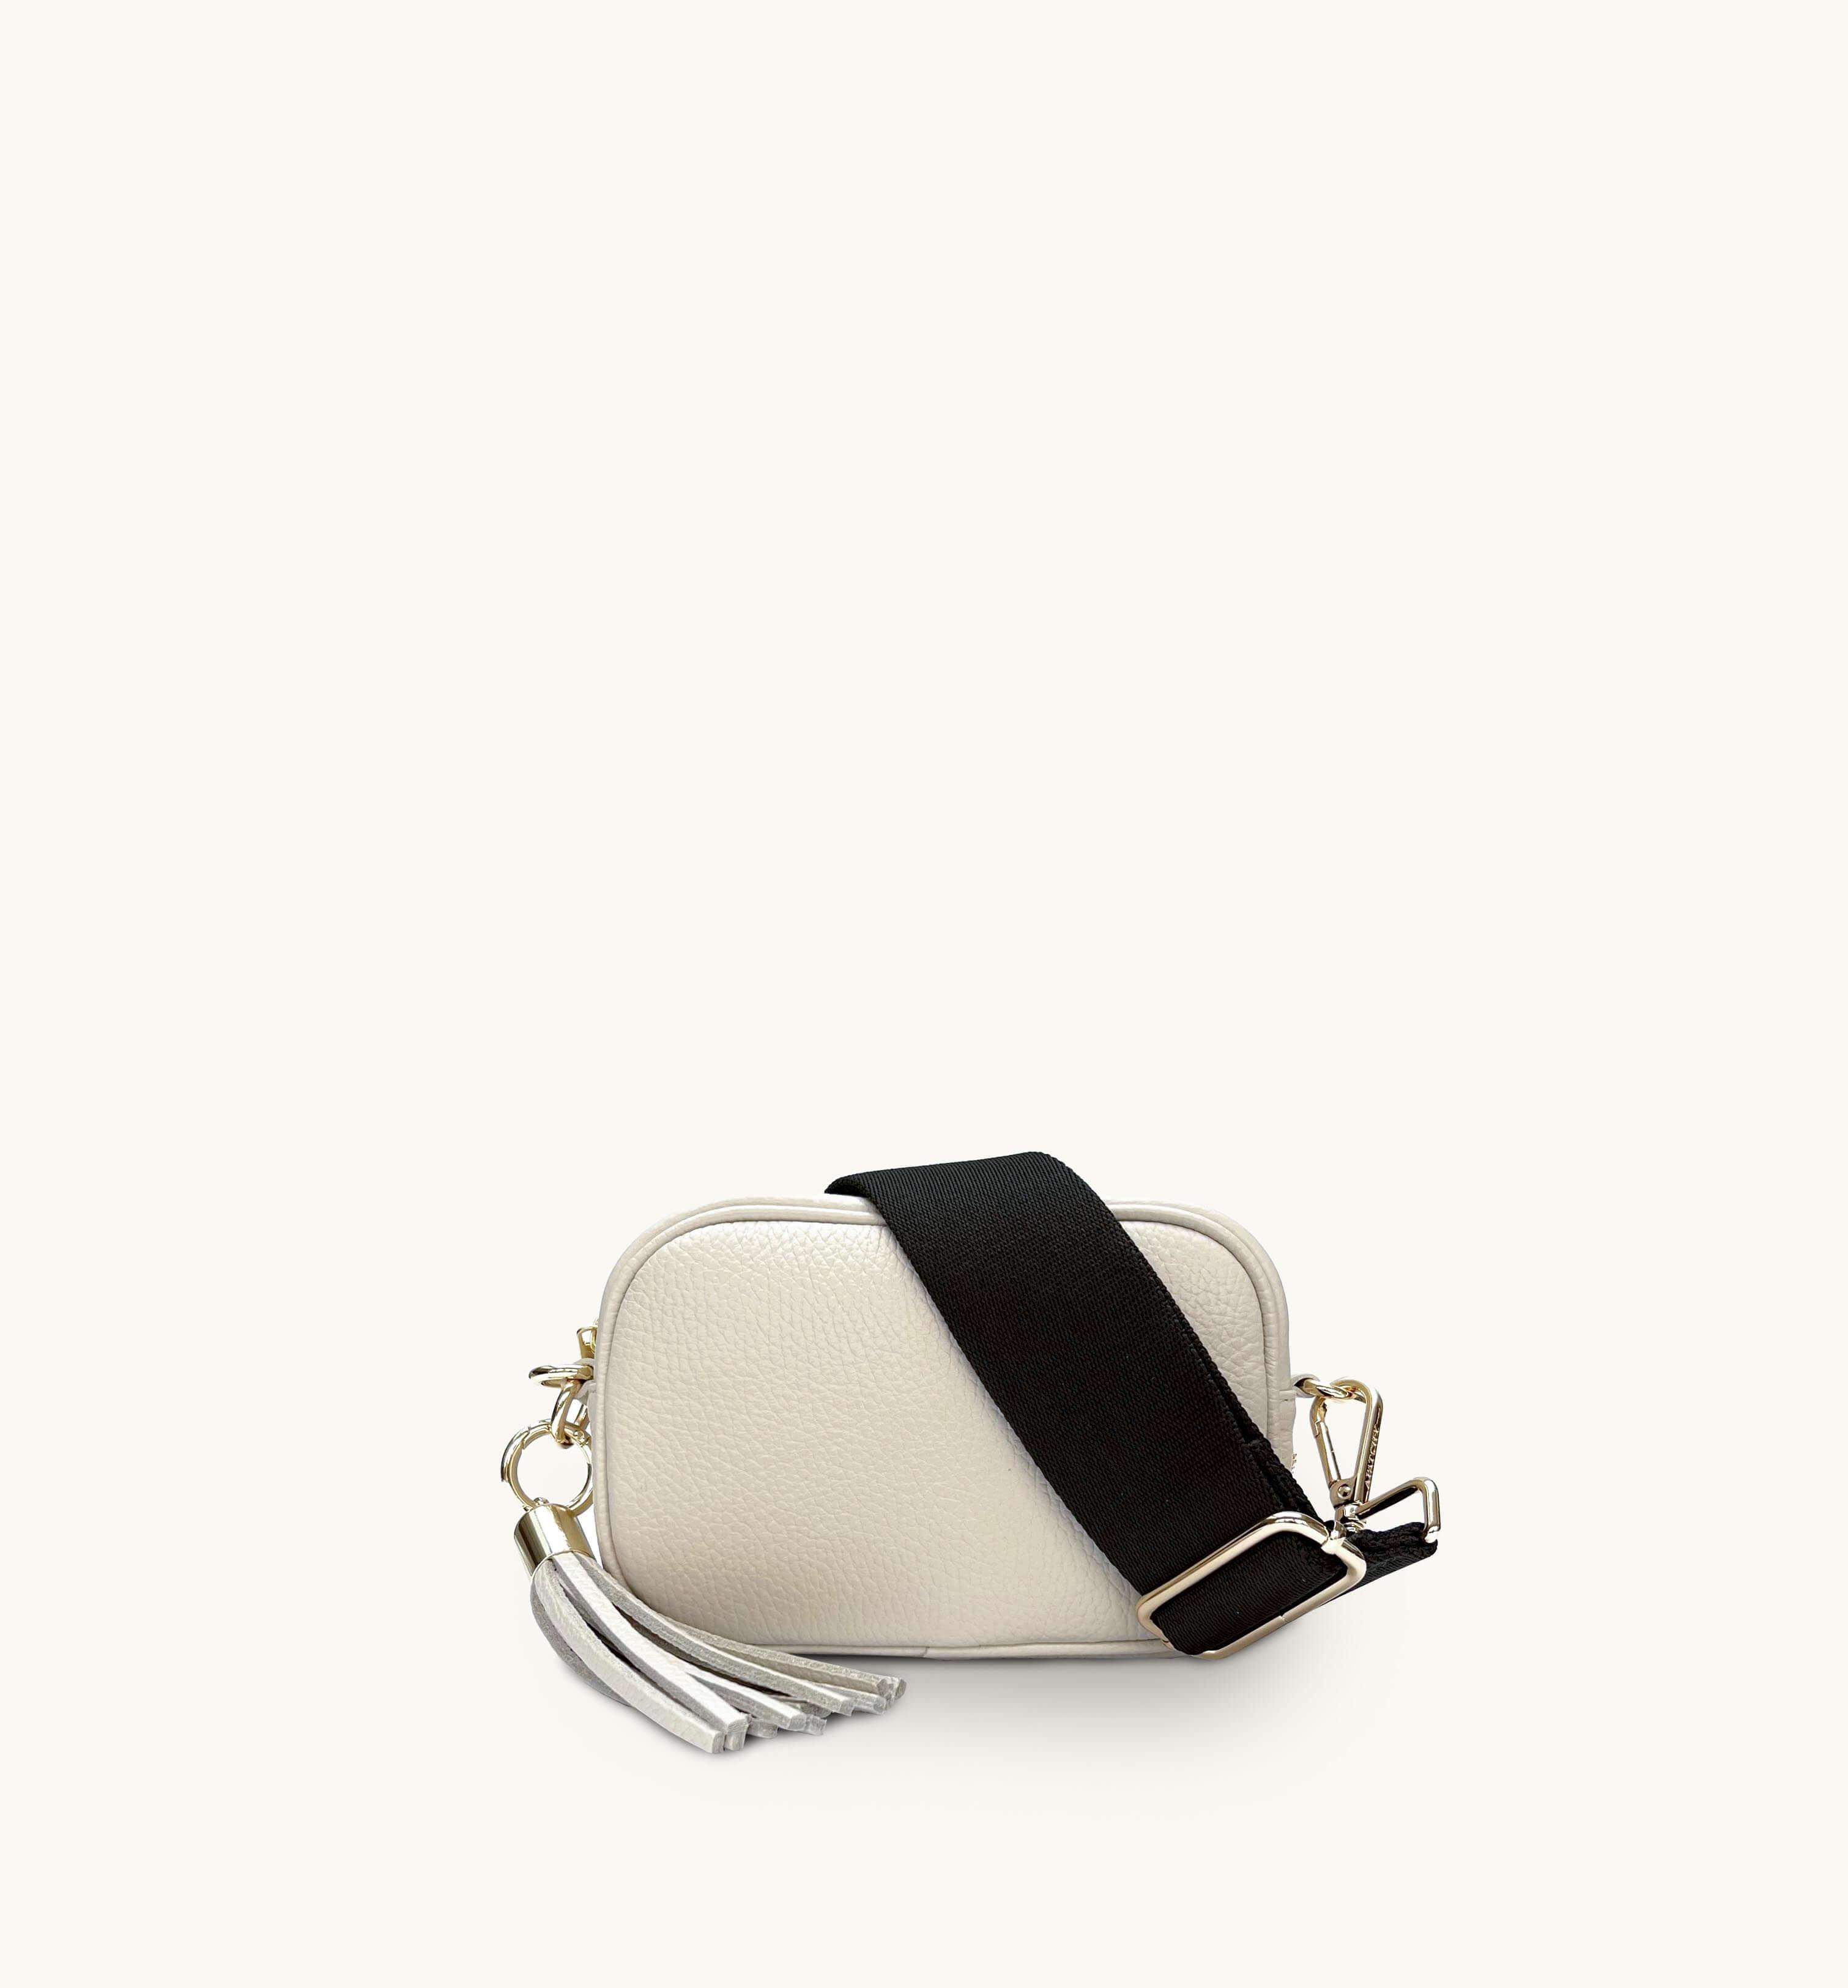 Миниатюрная кожаная сумка для телефона с кисточками и простым ремешком цвета хаки Apatchy London, бежевый цена и фото